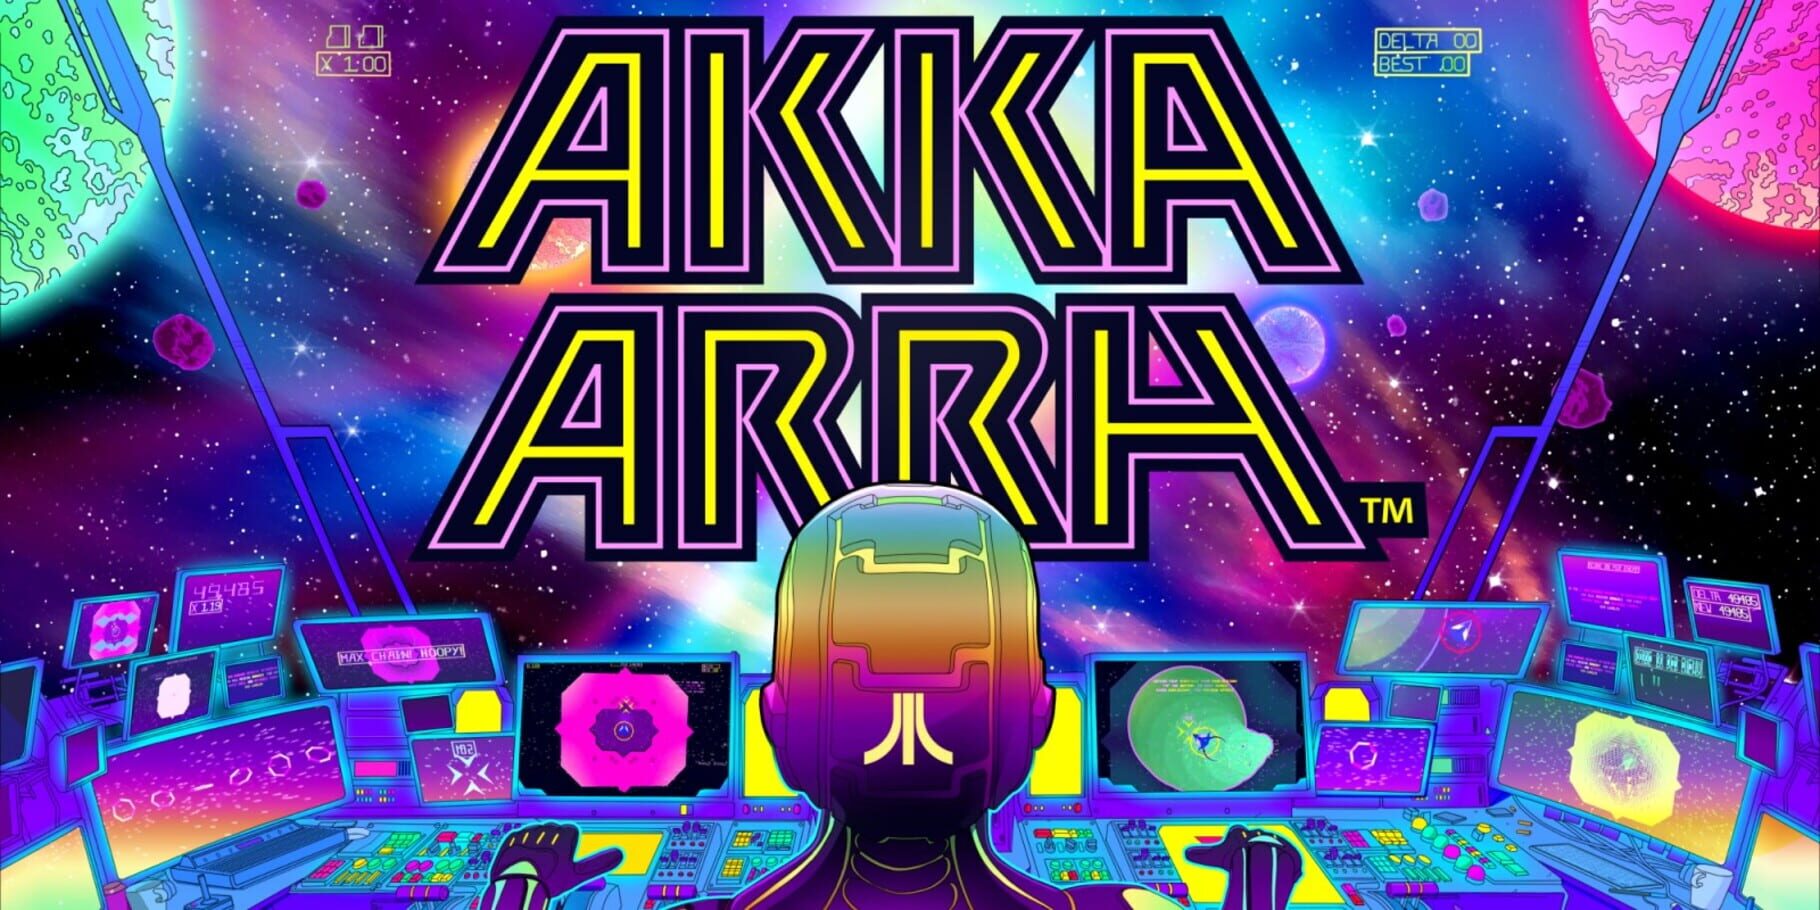 Akka Arrh artwork